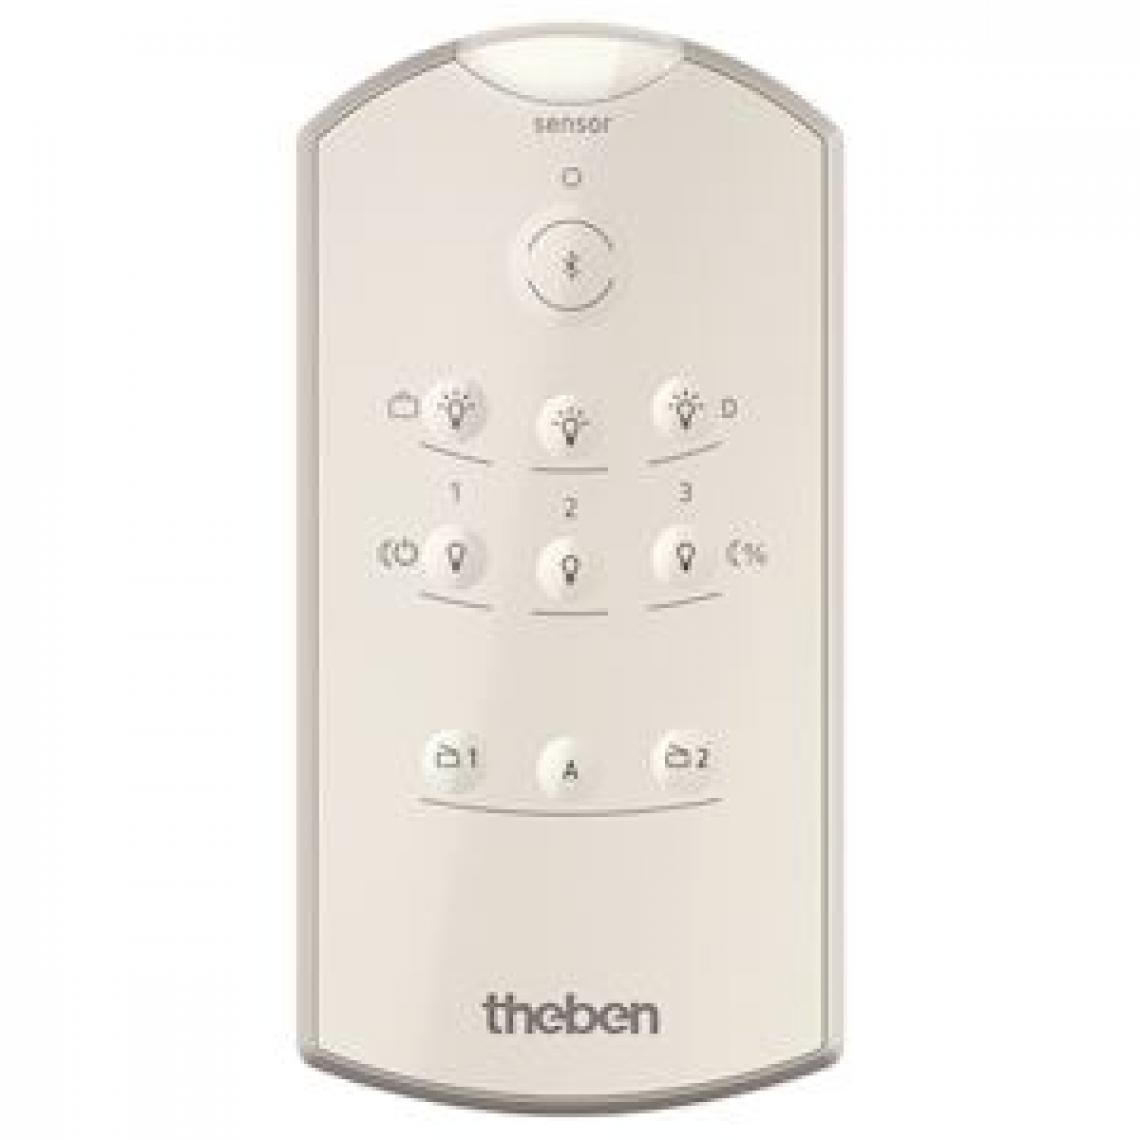 Theben - télécommande installateur - theben thesenda b - theben 9070985 - Détecteur connecté